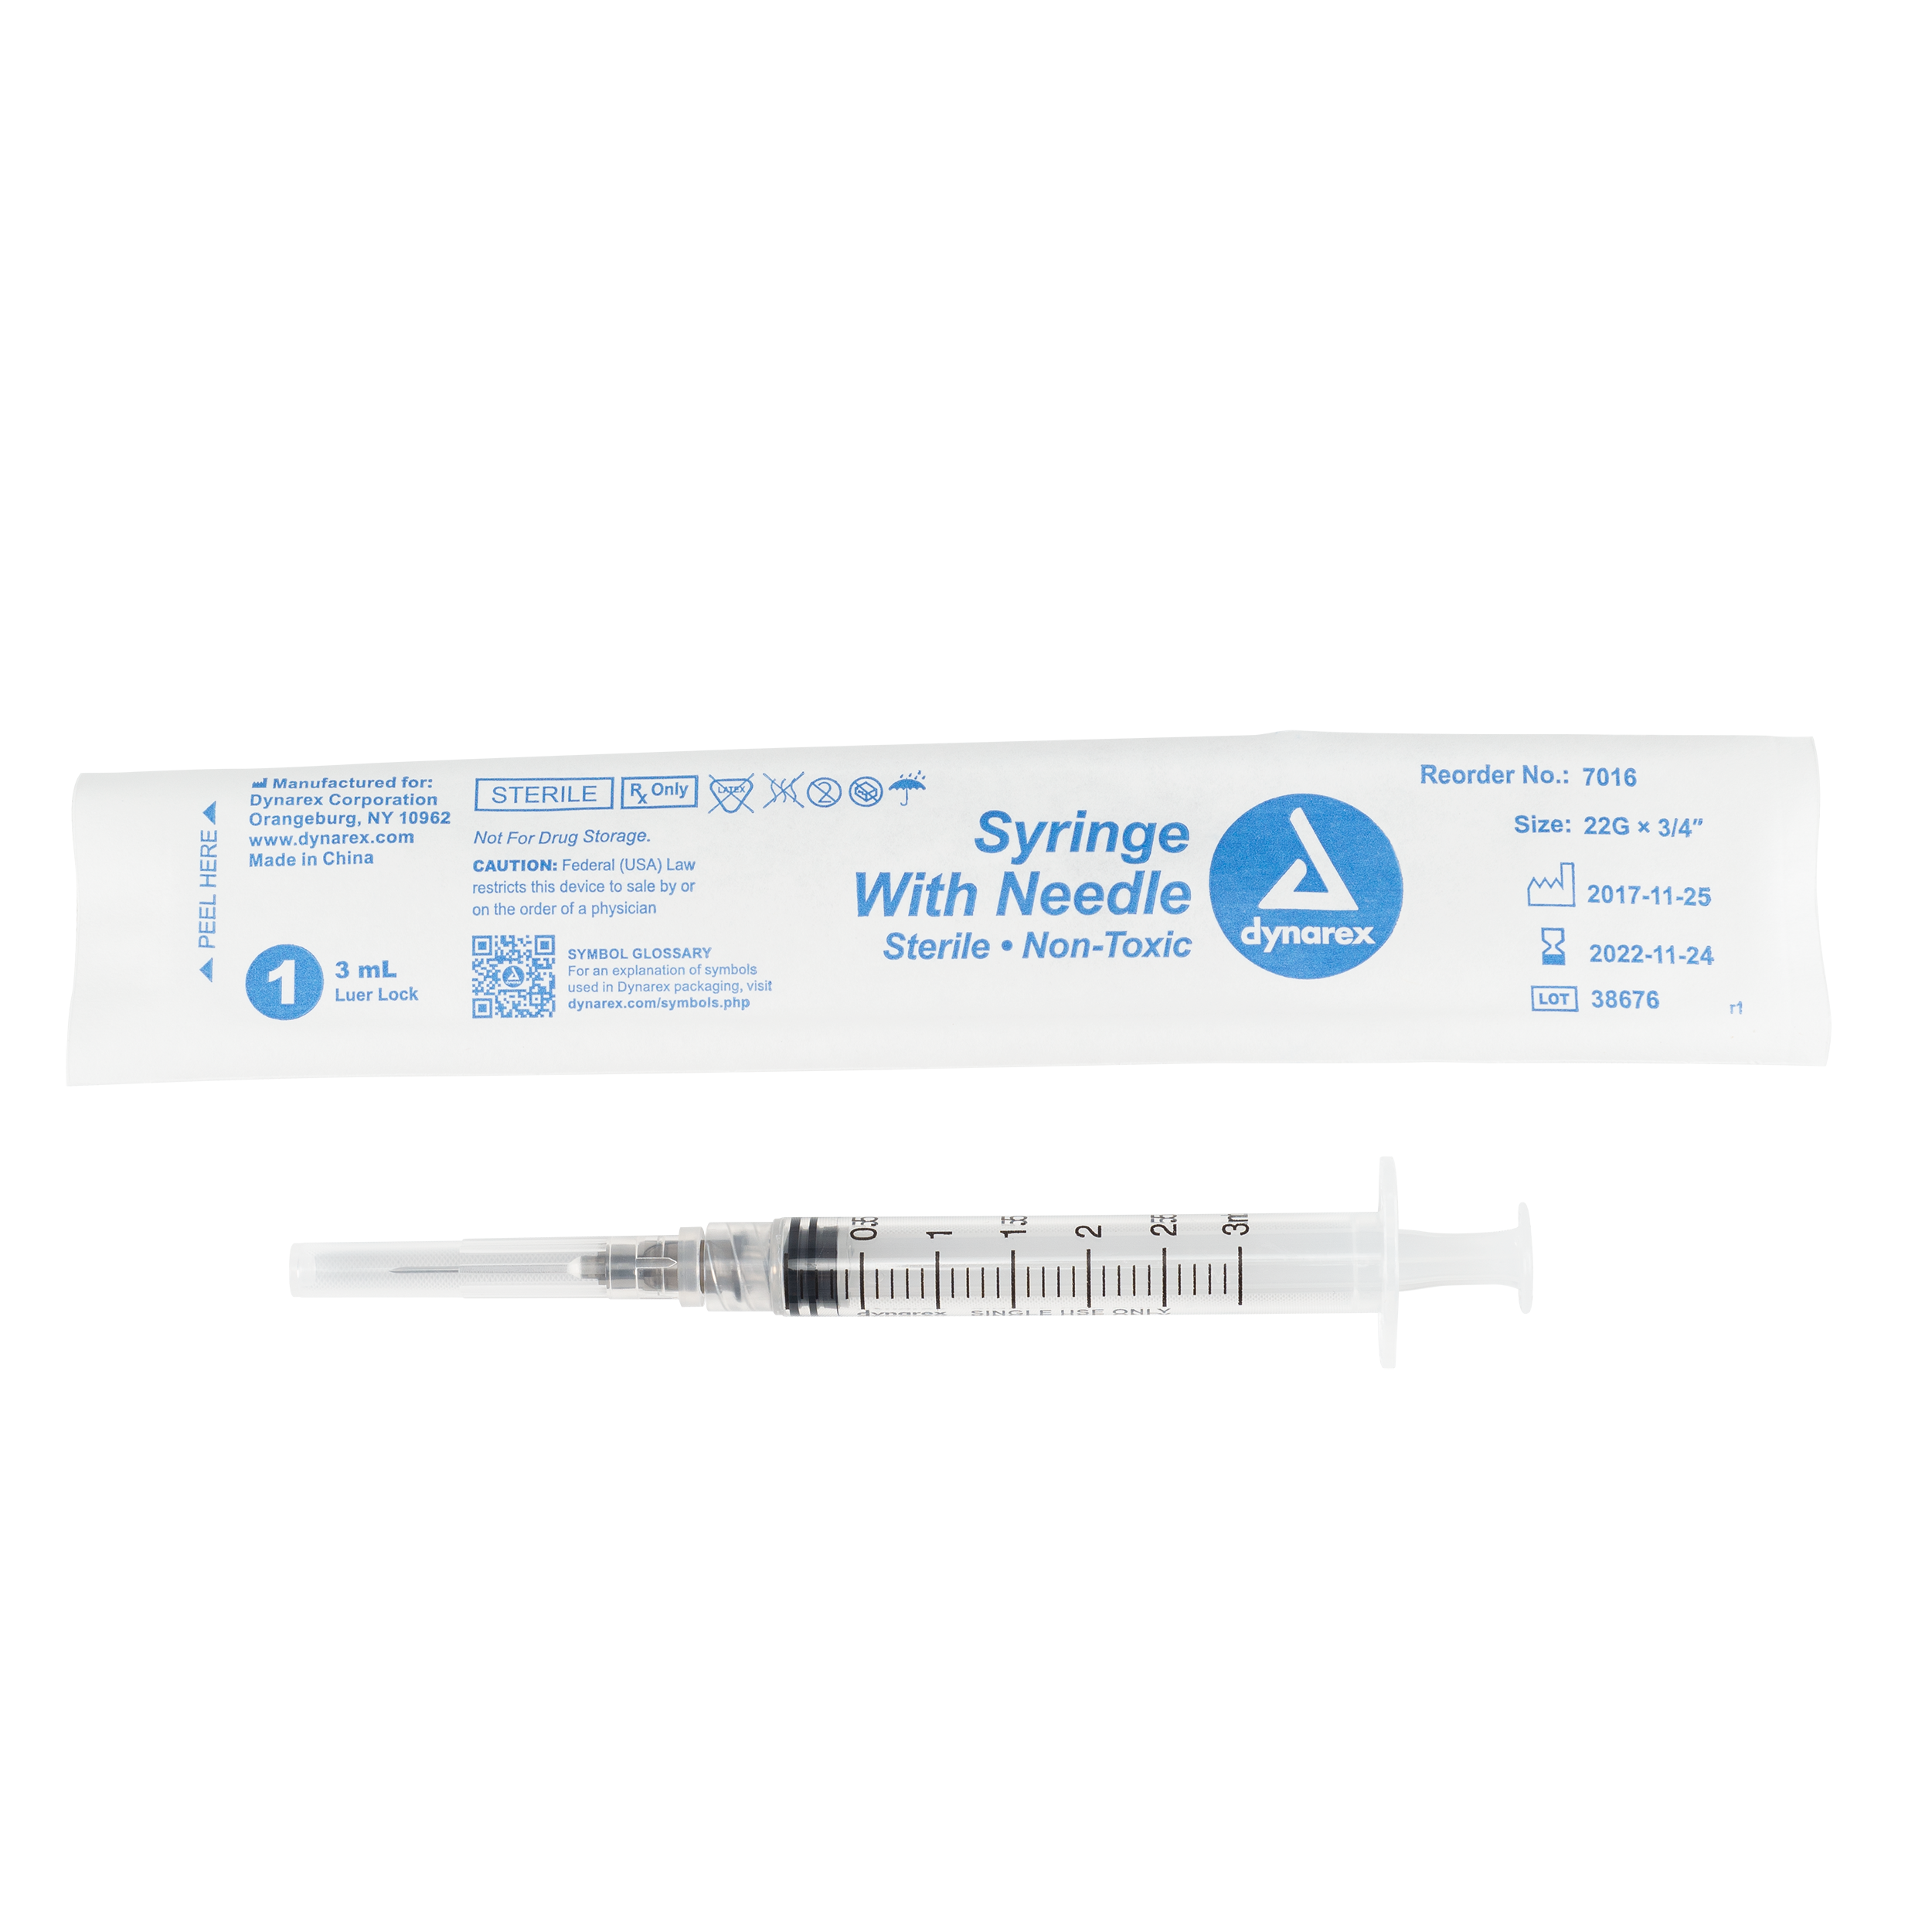 Syringes With Needle - 3cc - 22G, 3/4